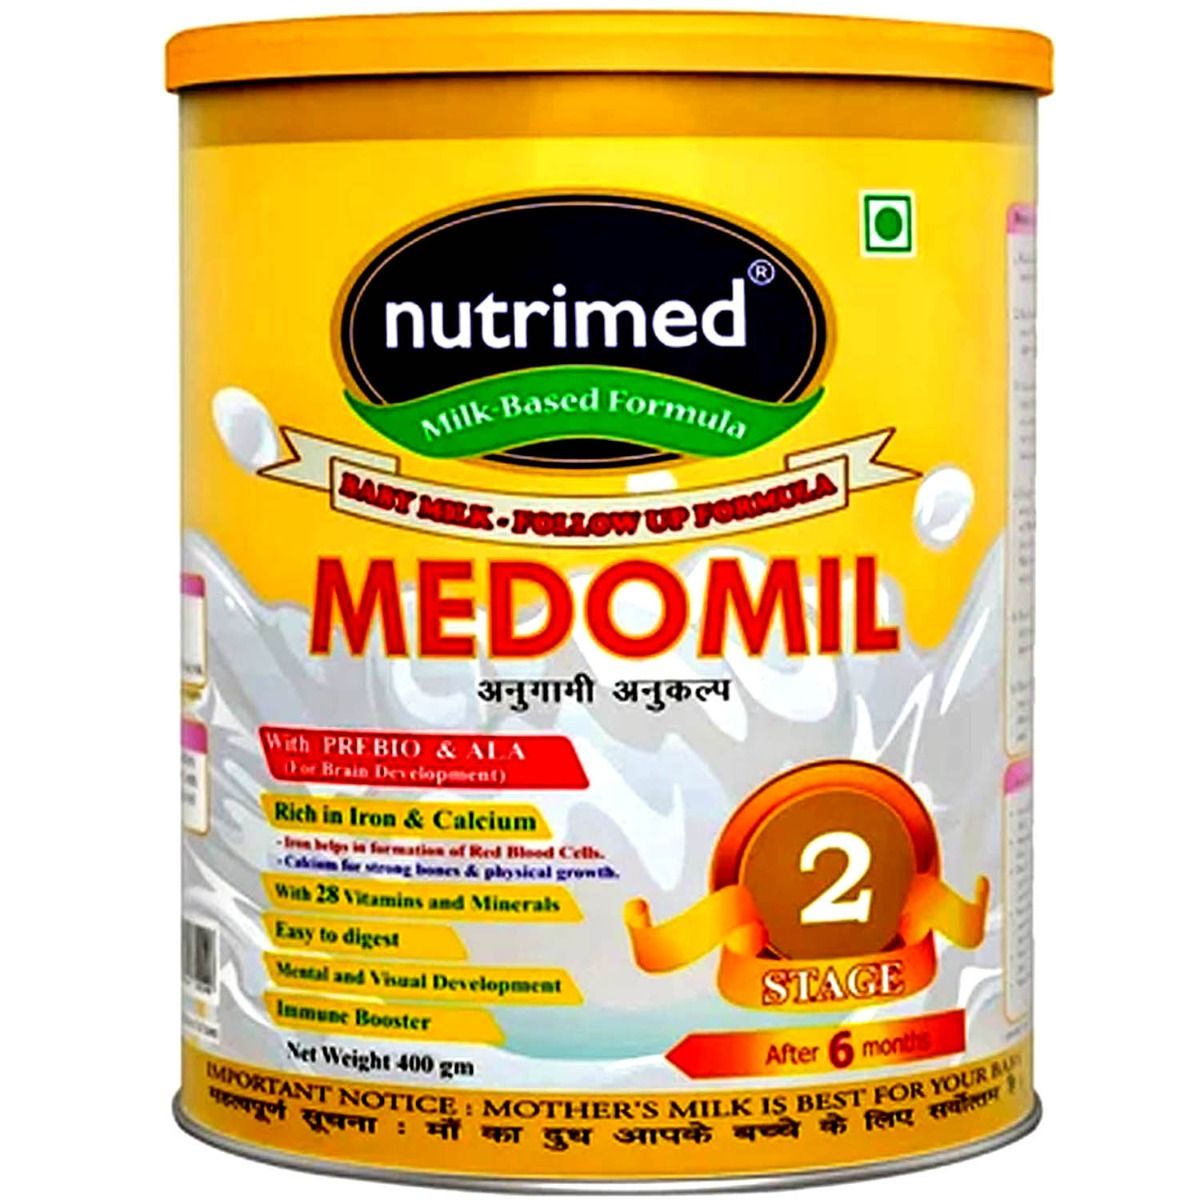 Medomil Infant Formula Stage 2, 400 gm Tin, Pack of 1 